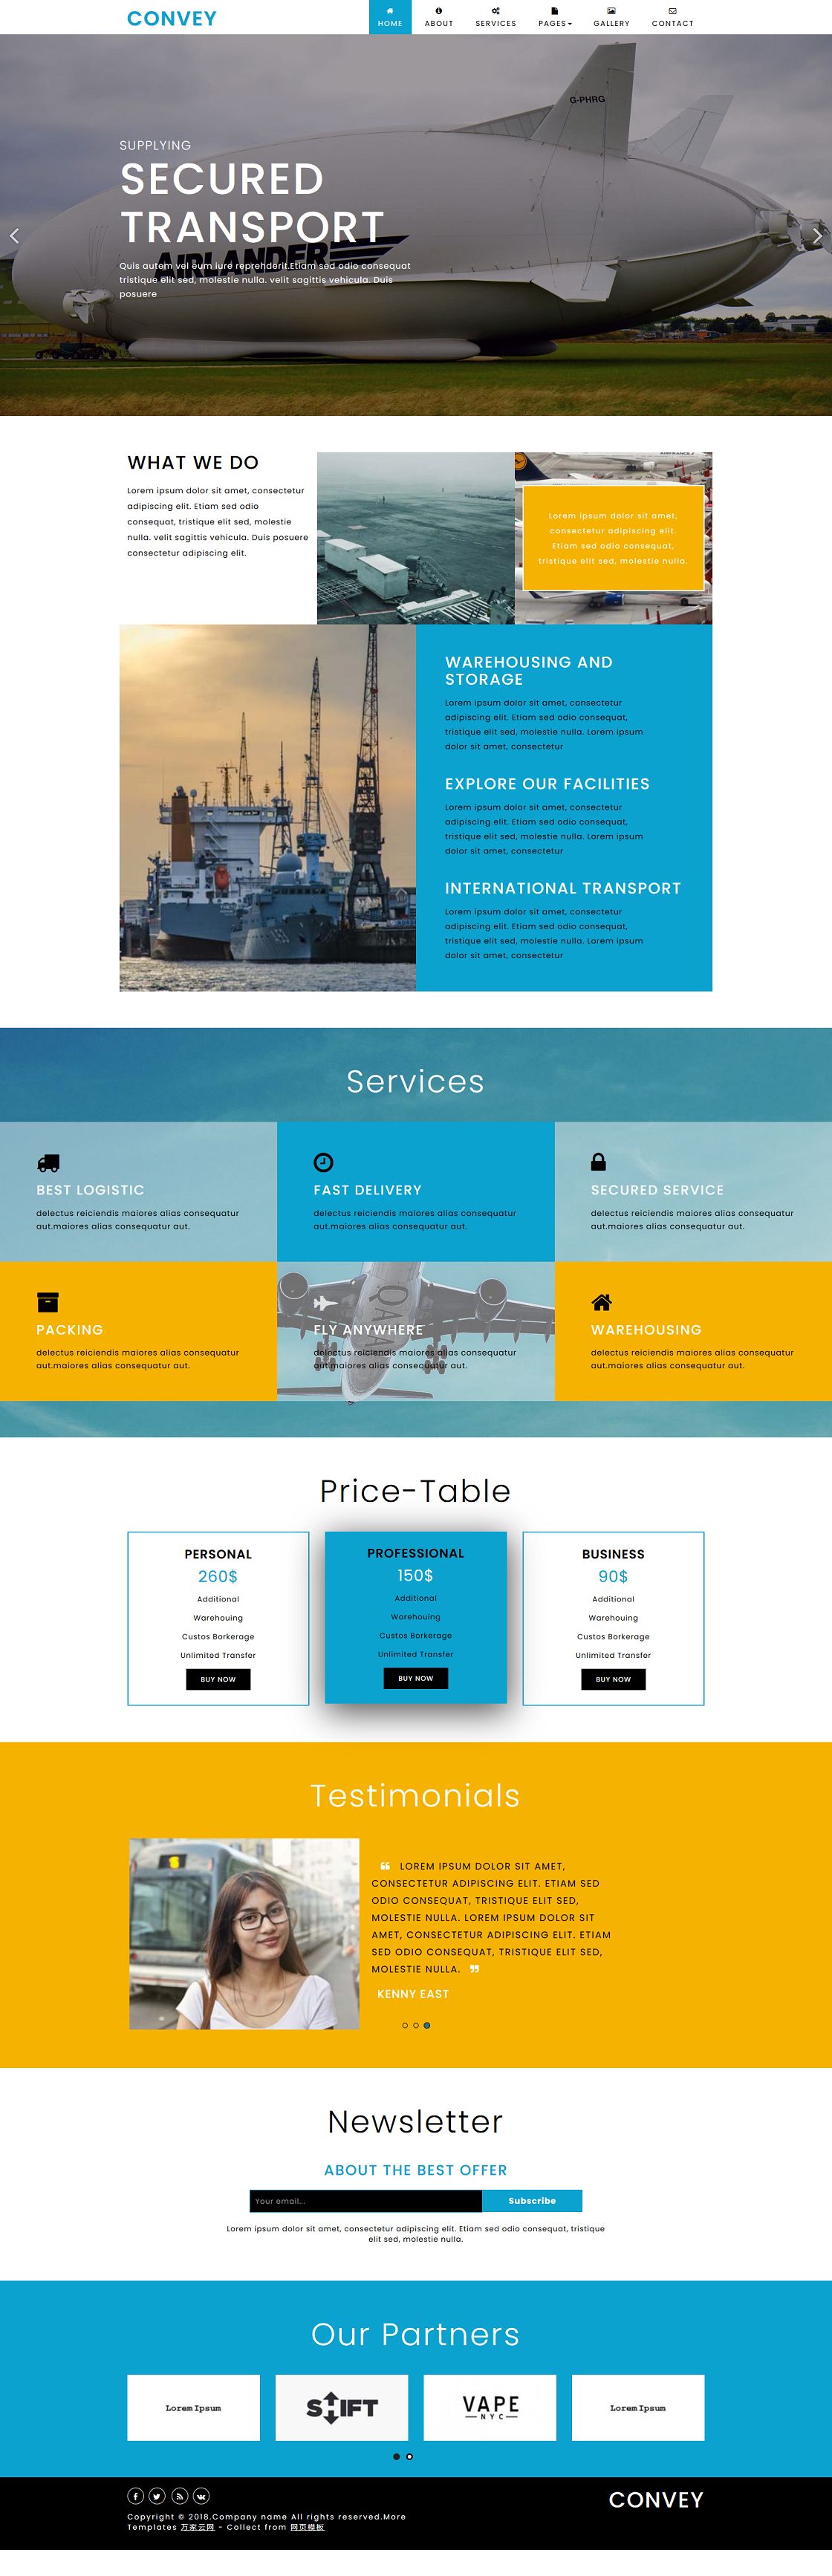 航空空运物流企业网站模板